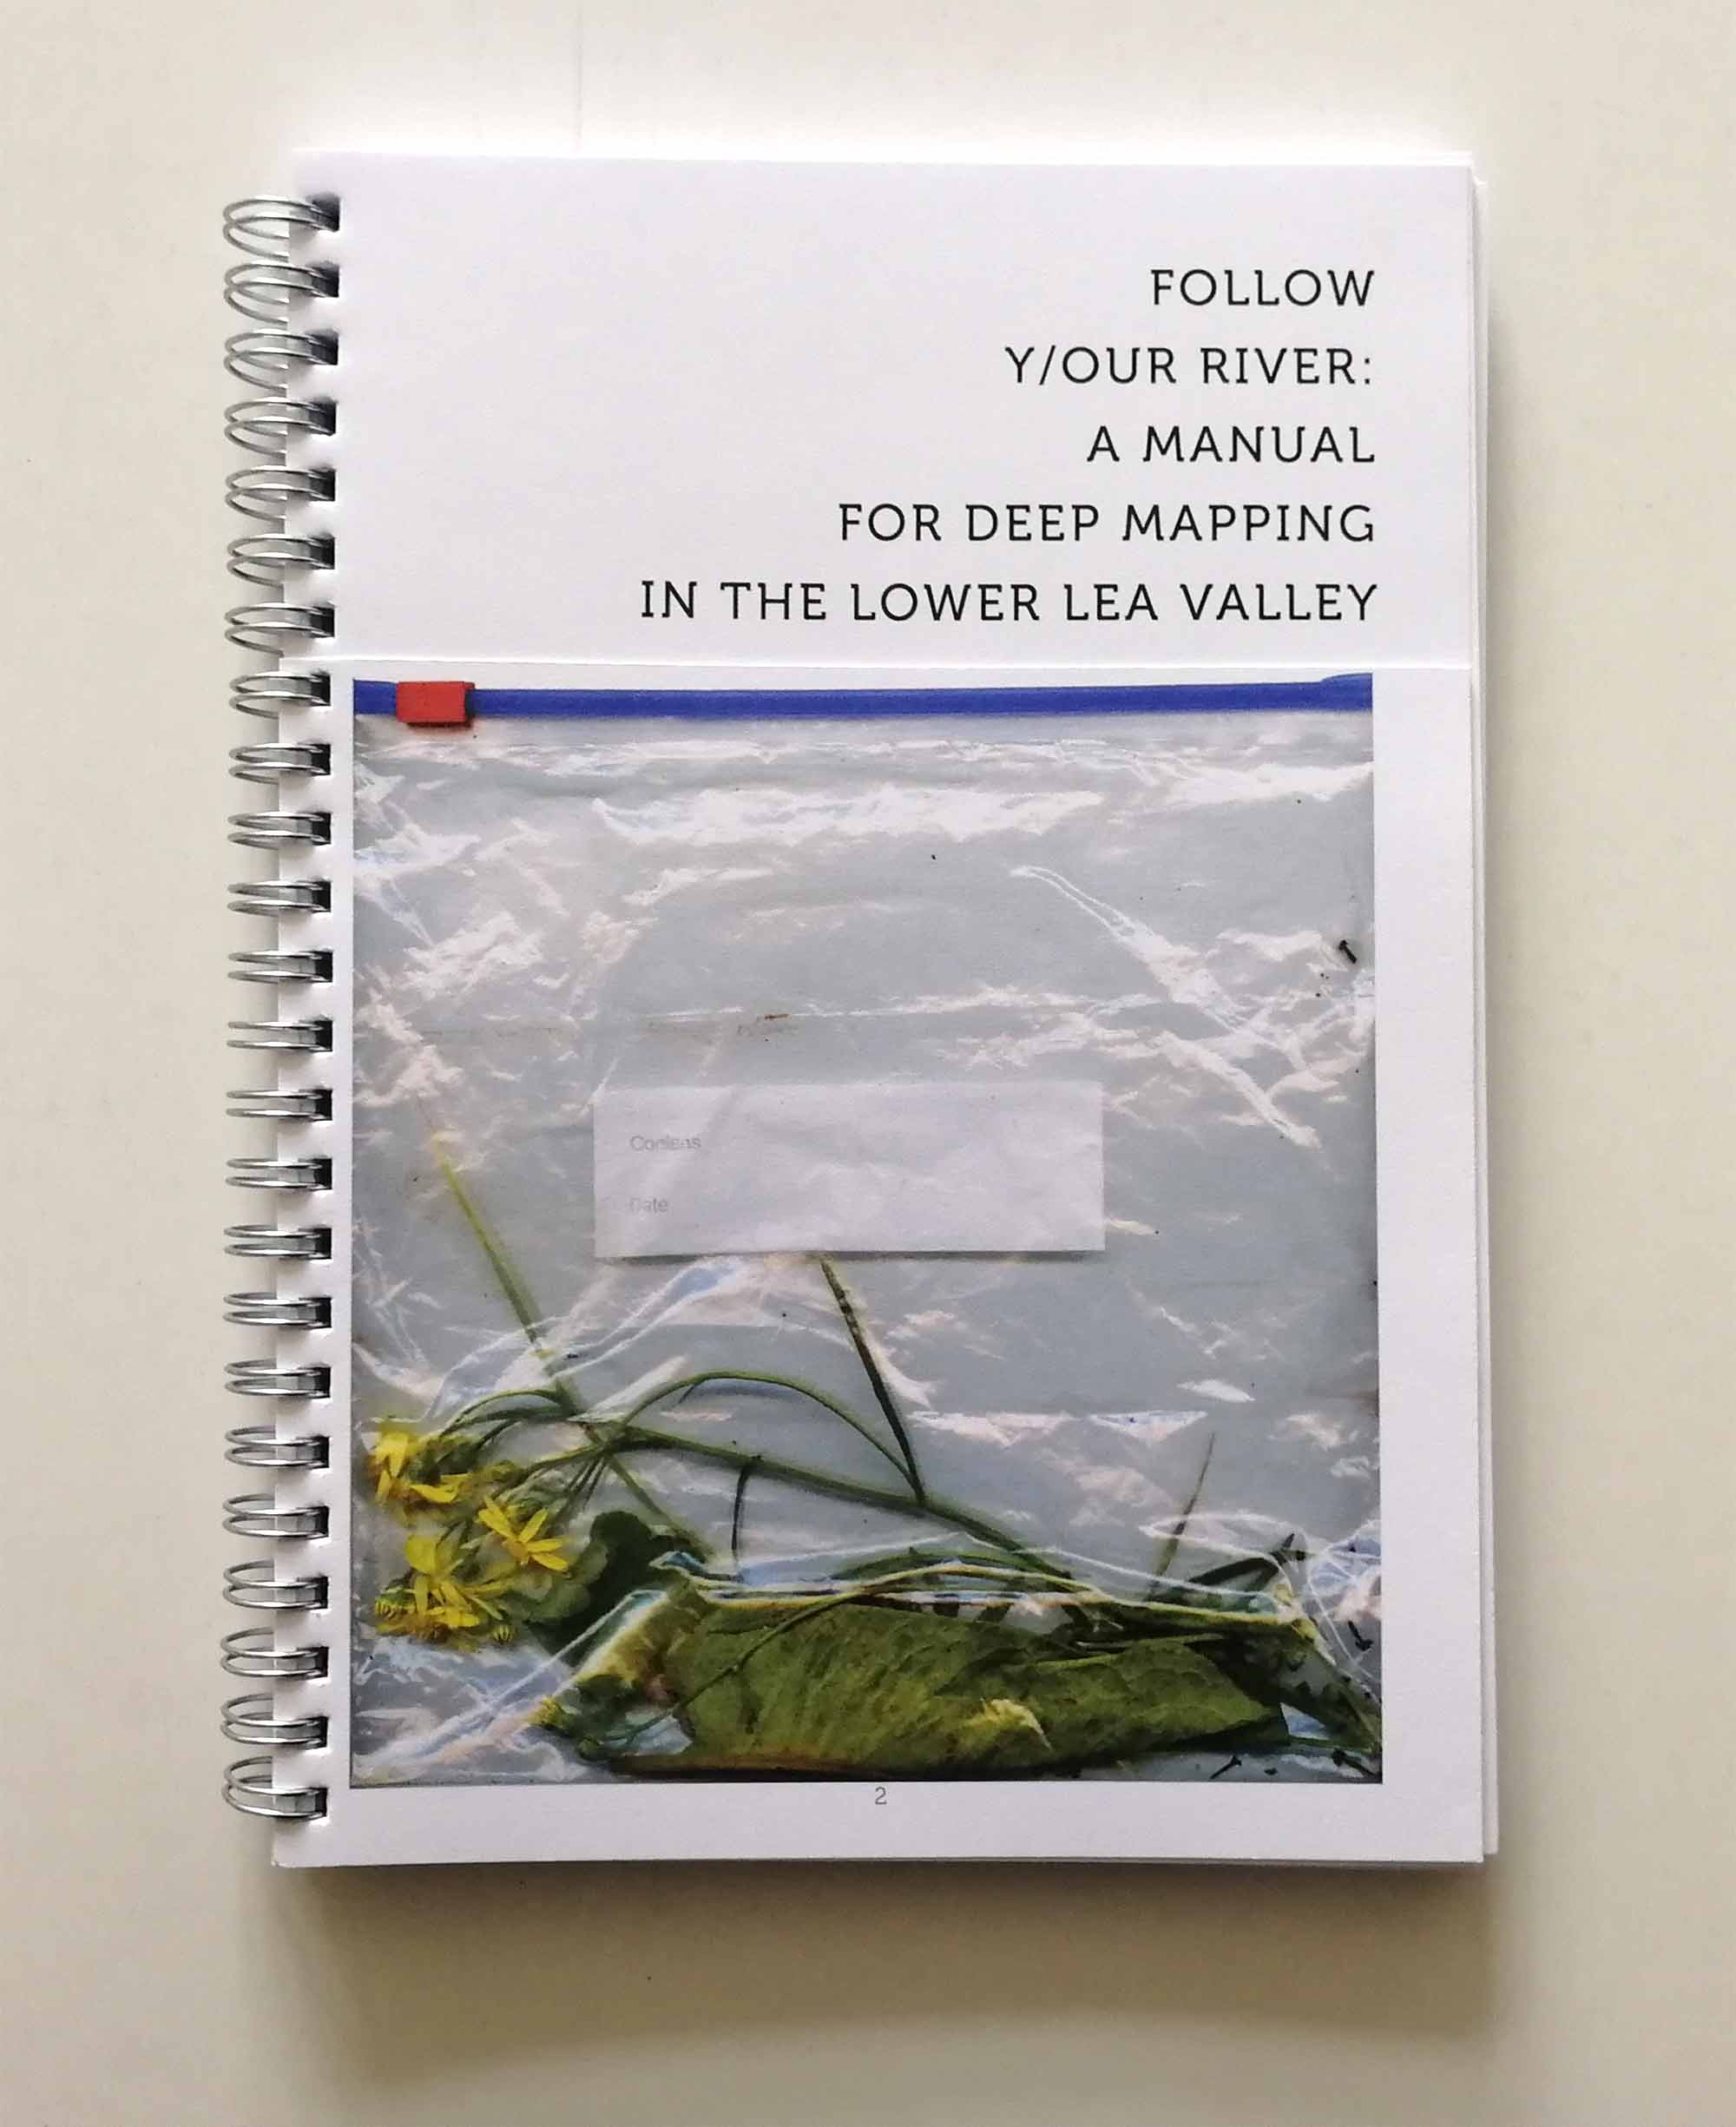 follow-y-our-river-manual-msdm-publications-01